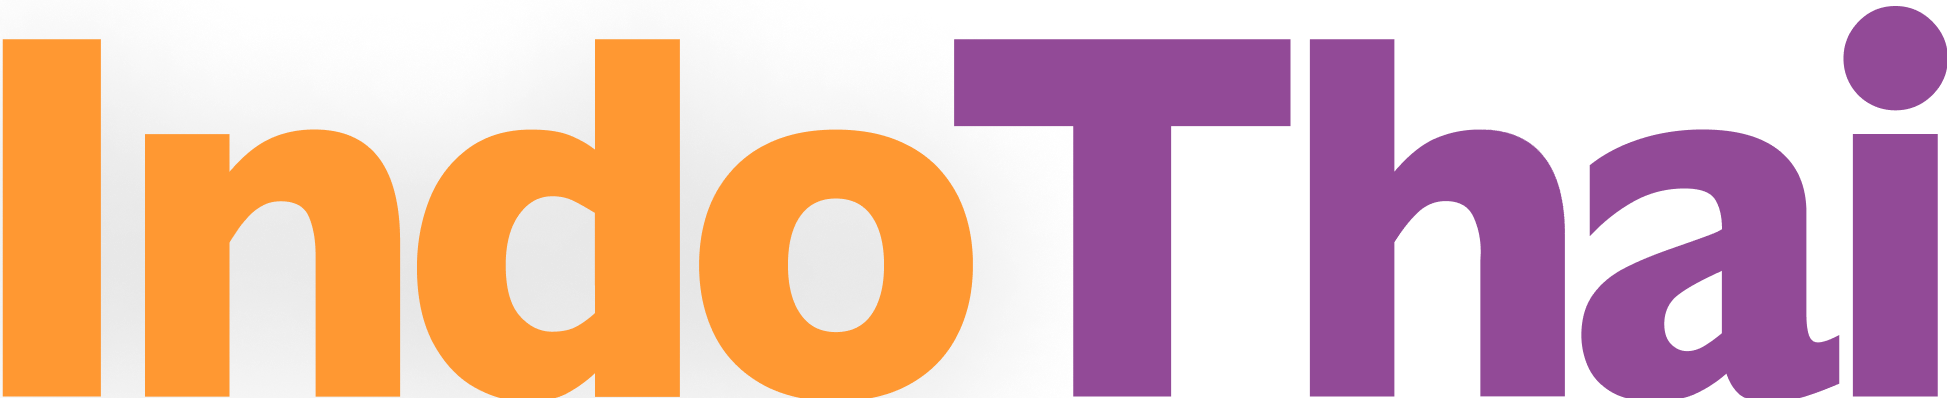 IndoThai Logo